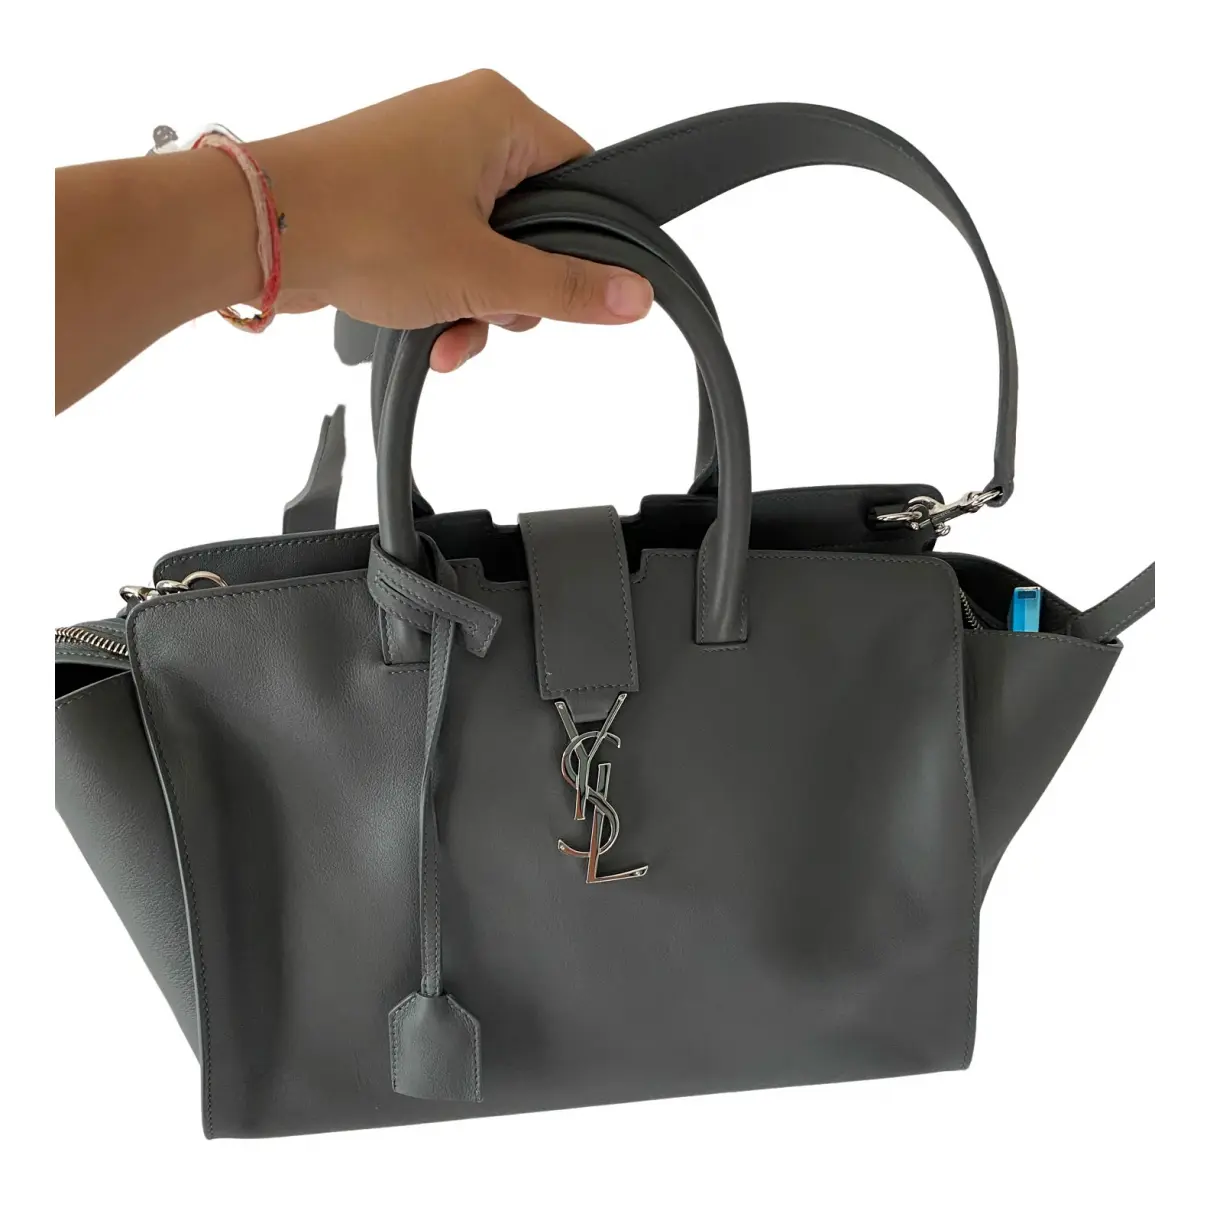 Downtown leather handbag Saint Laurent